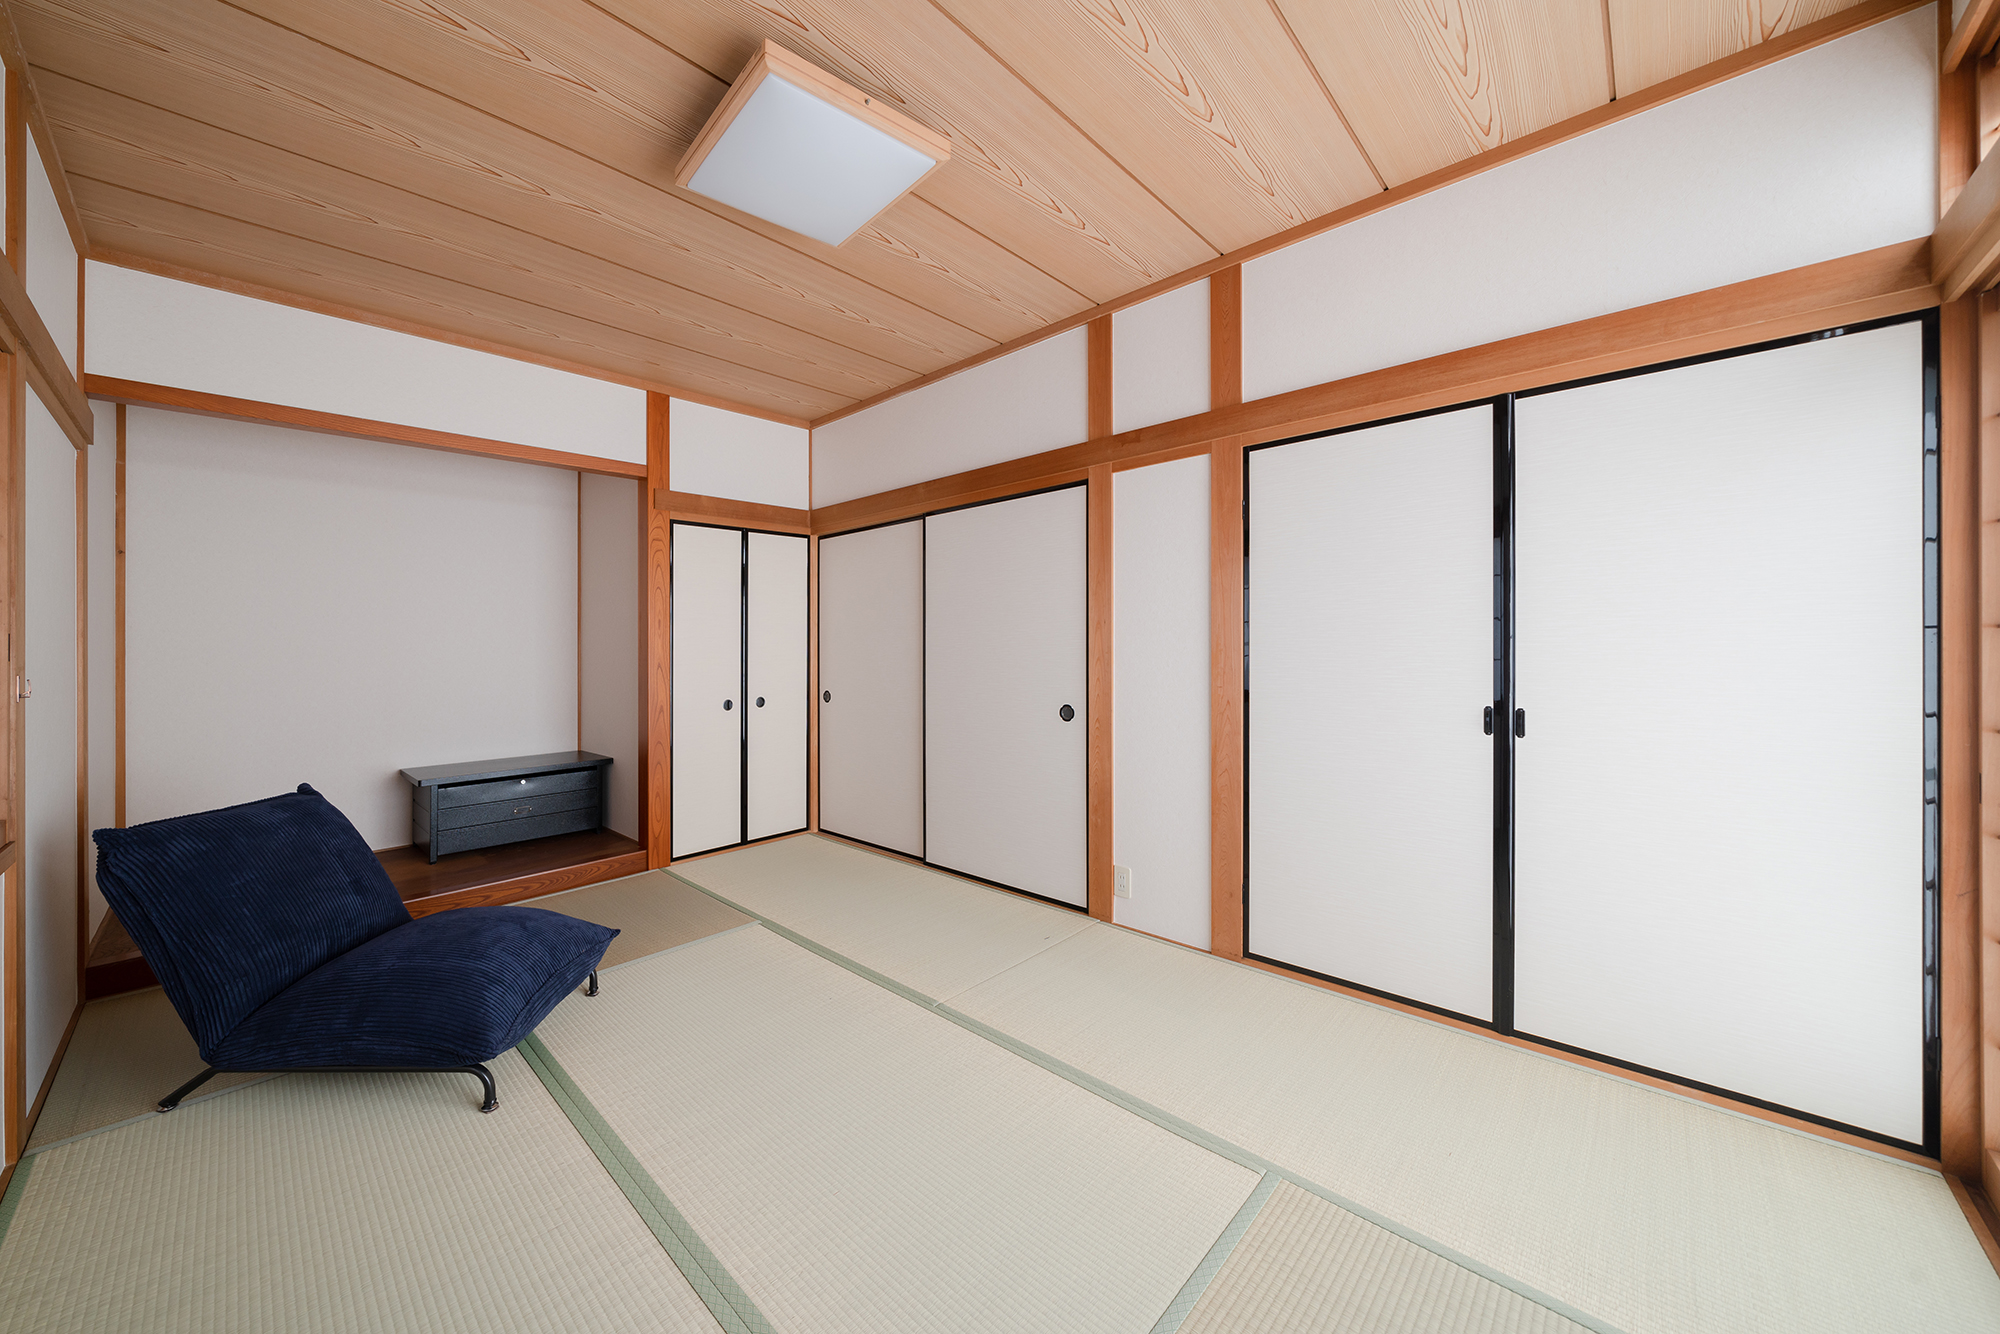 趣のある和室は基本的にはクロスや畳の変更のみ。いい所は残すことも、デザインのひとつ。